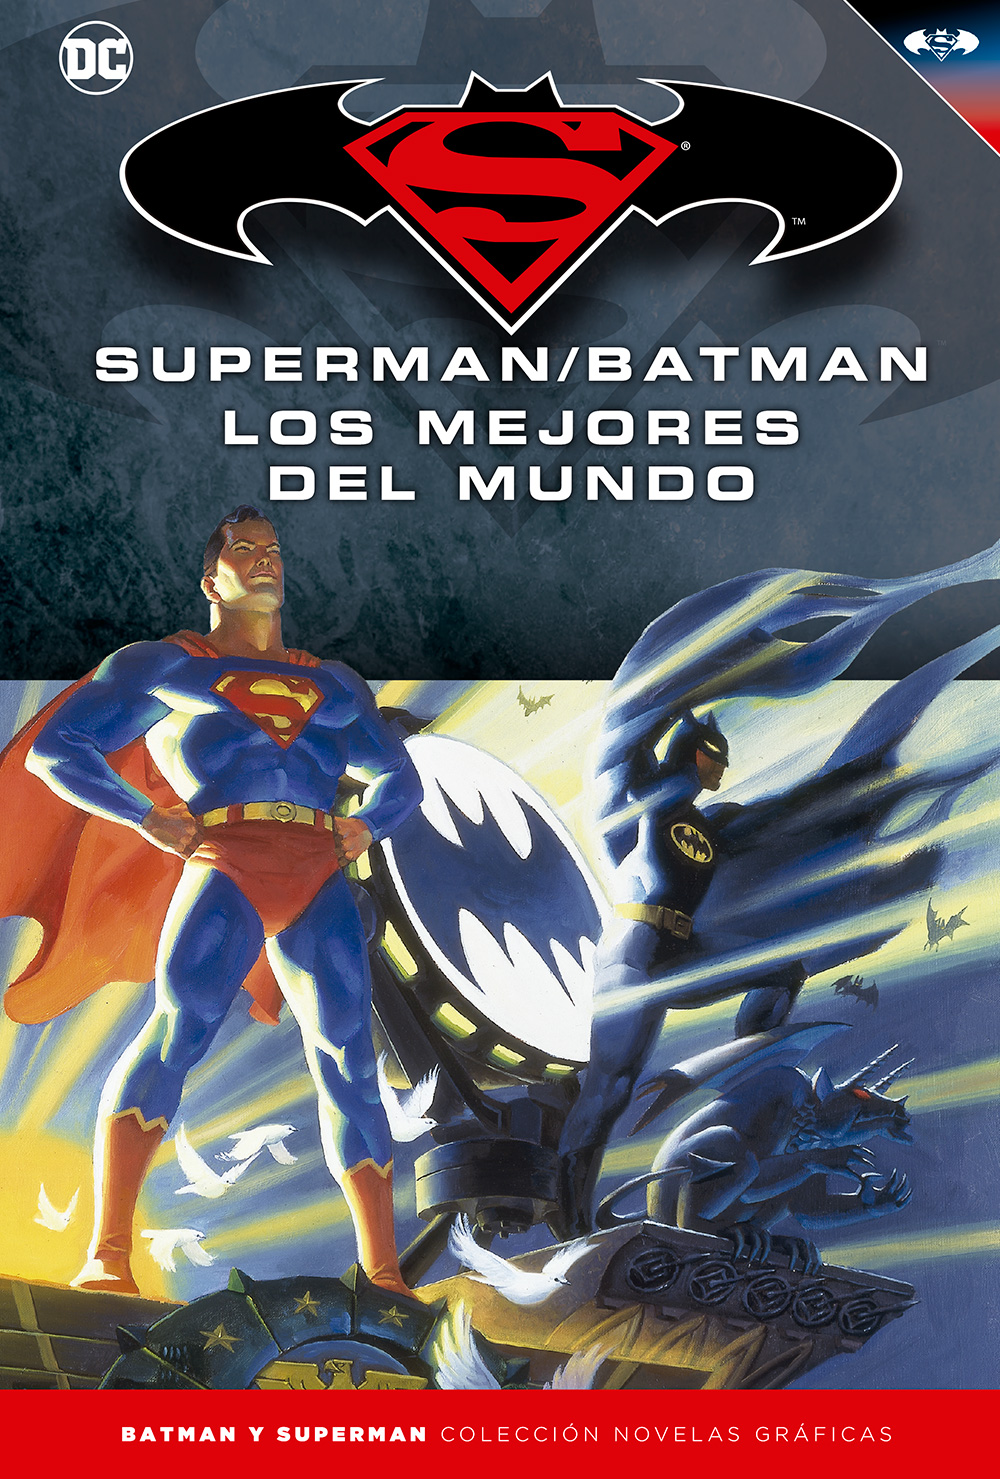 1-8 - [DC - Salvat] Batman y Superman: Colección Novelas Gráficas - Página 7 Portada_BMSM_16_LosMejoresdelMundo